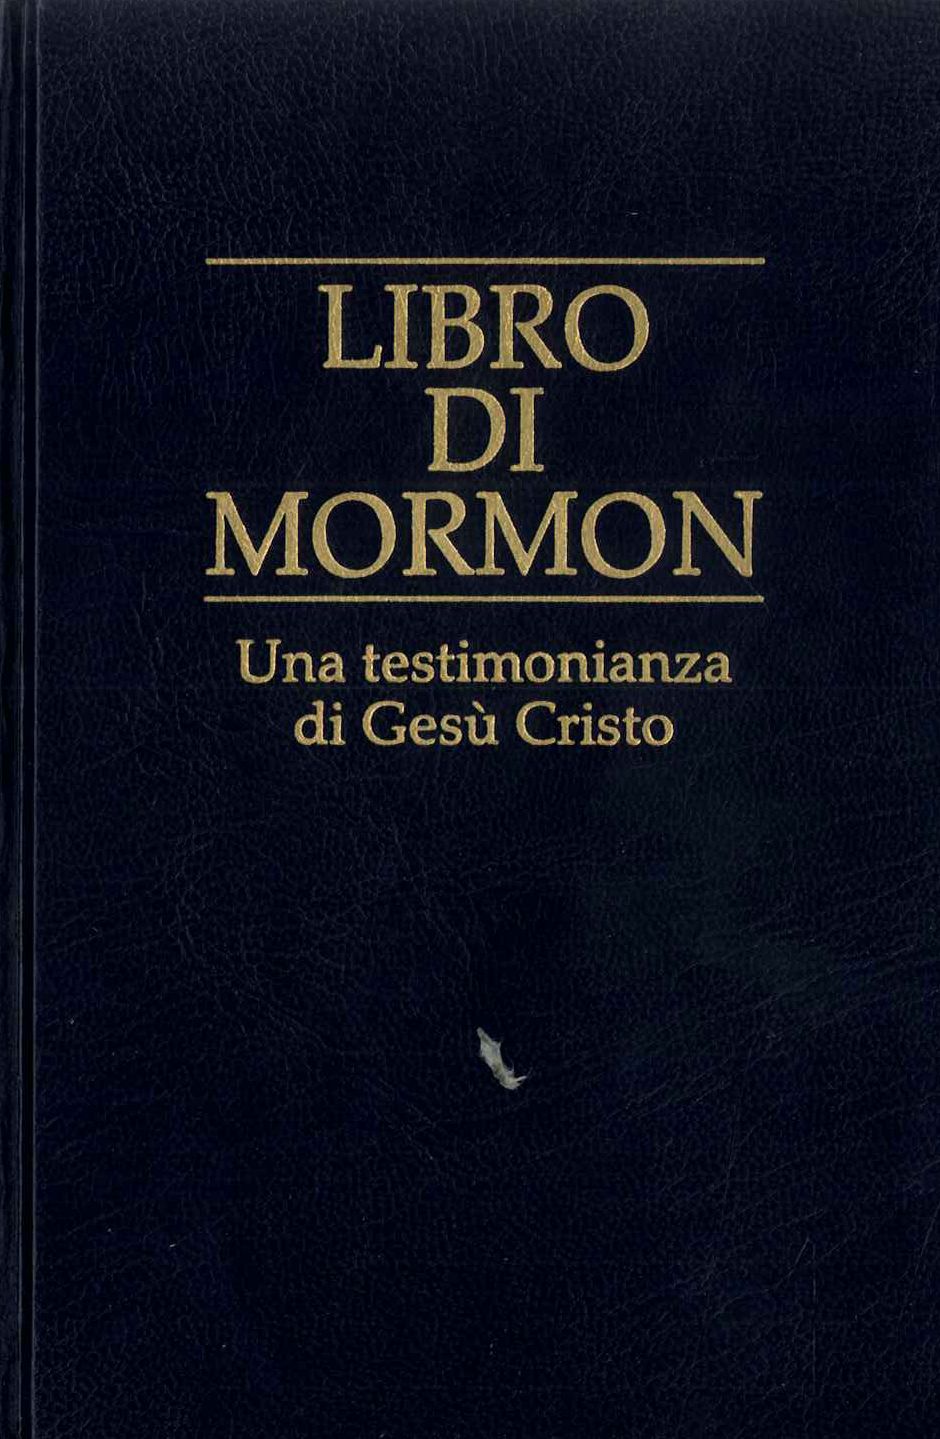 Libro di mormon